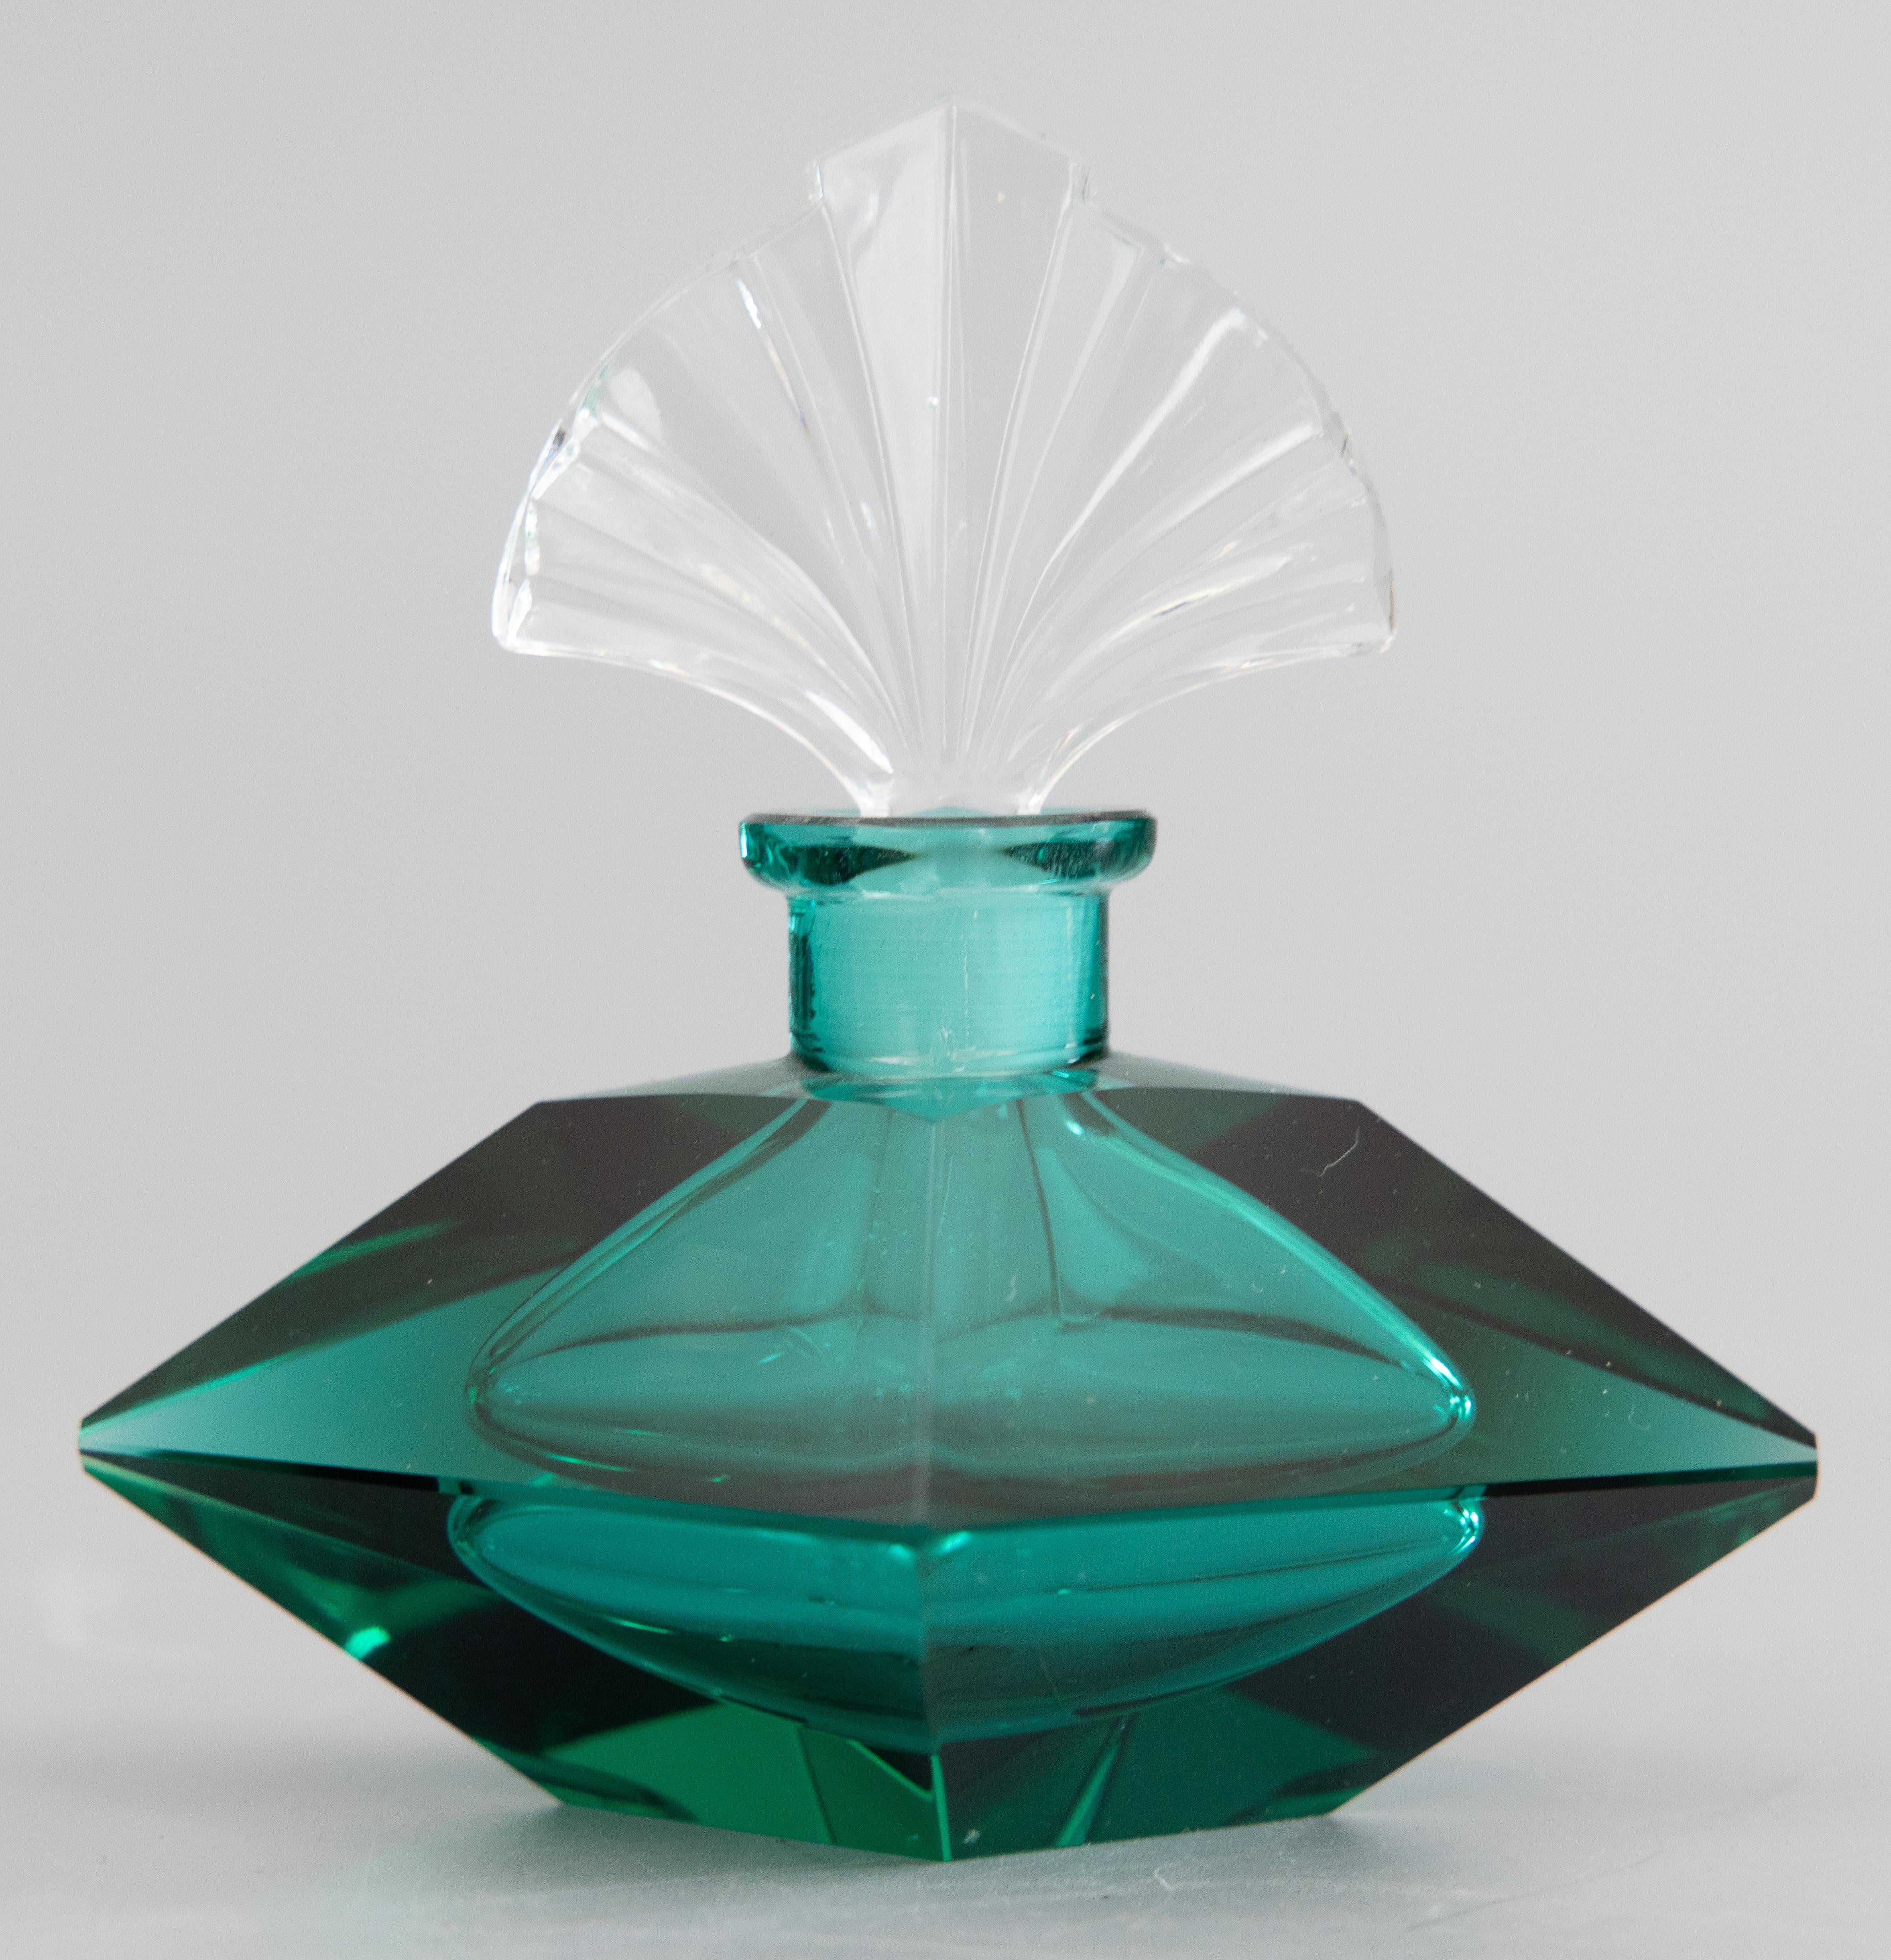 Eine atemberaubende Vintage Art Deco italienischen Murano Glas Parfüm Köln Flasche mit einem Fächer förmigen Stopfen. Dieser stilvolle Parfümflakon ist ein wunderschönes, durchscheinendes Smaragdgrün, das an Fitzgeralds Roman 